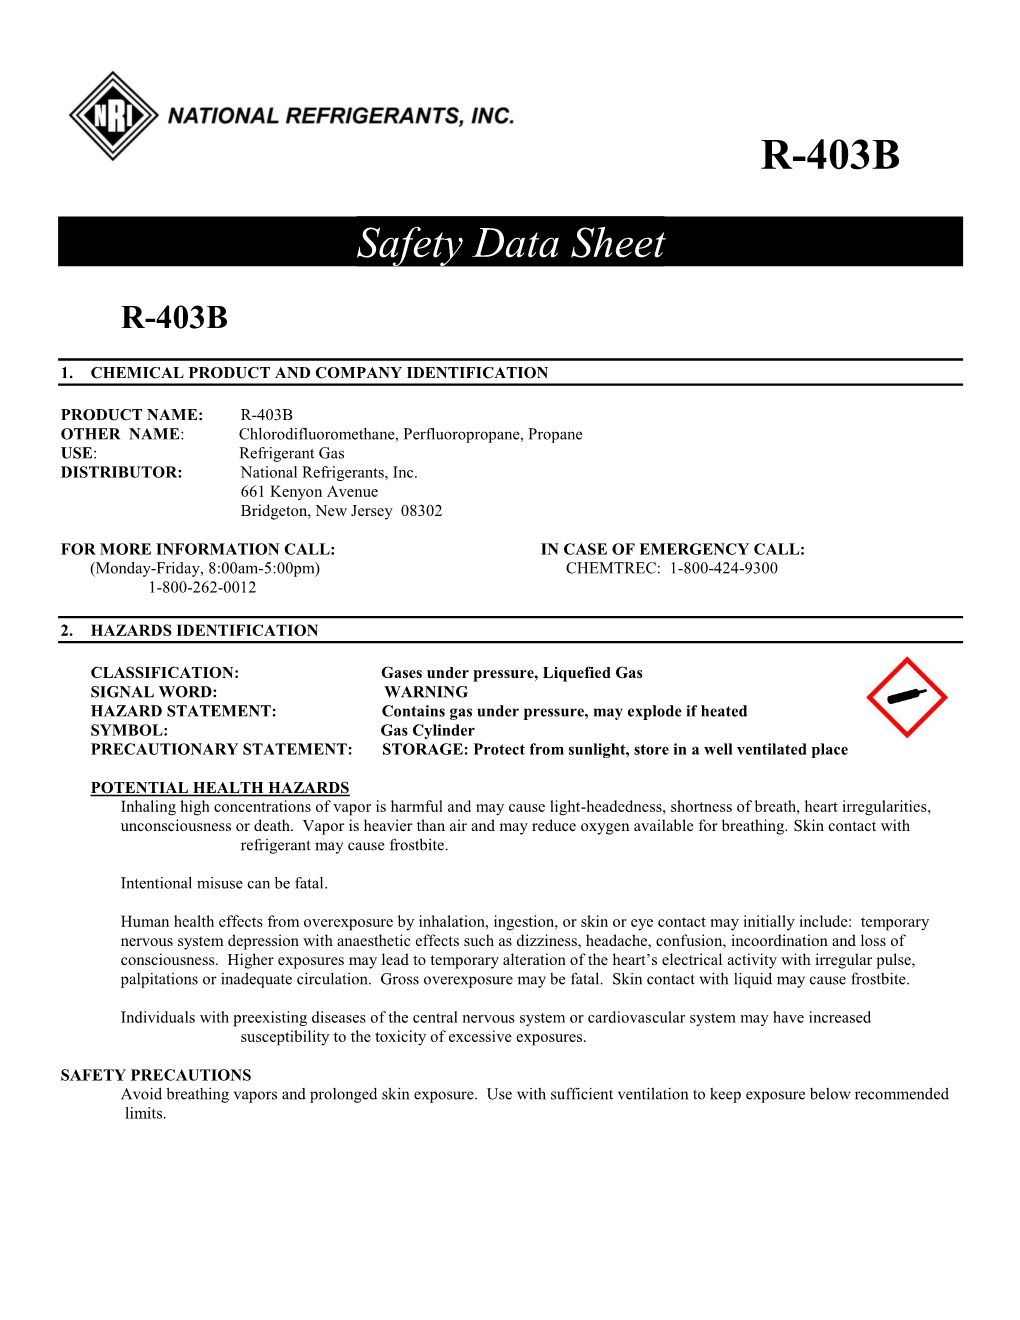 R-403B Safety Data Sheet